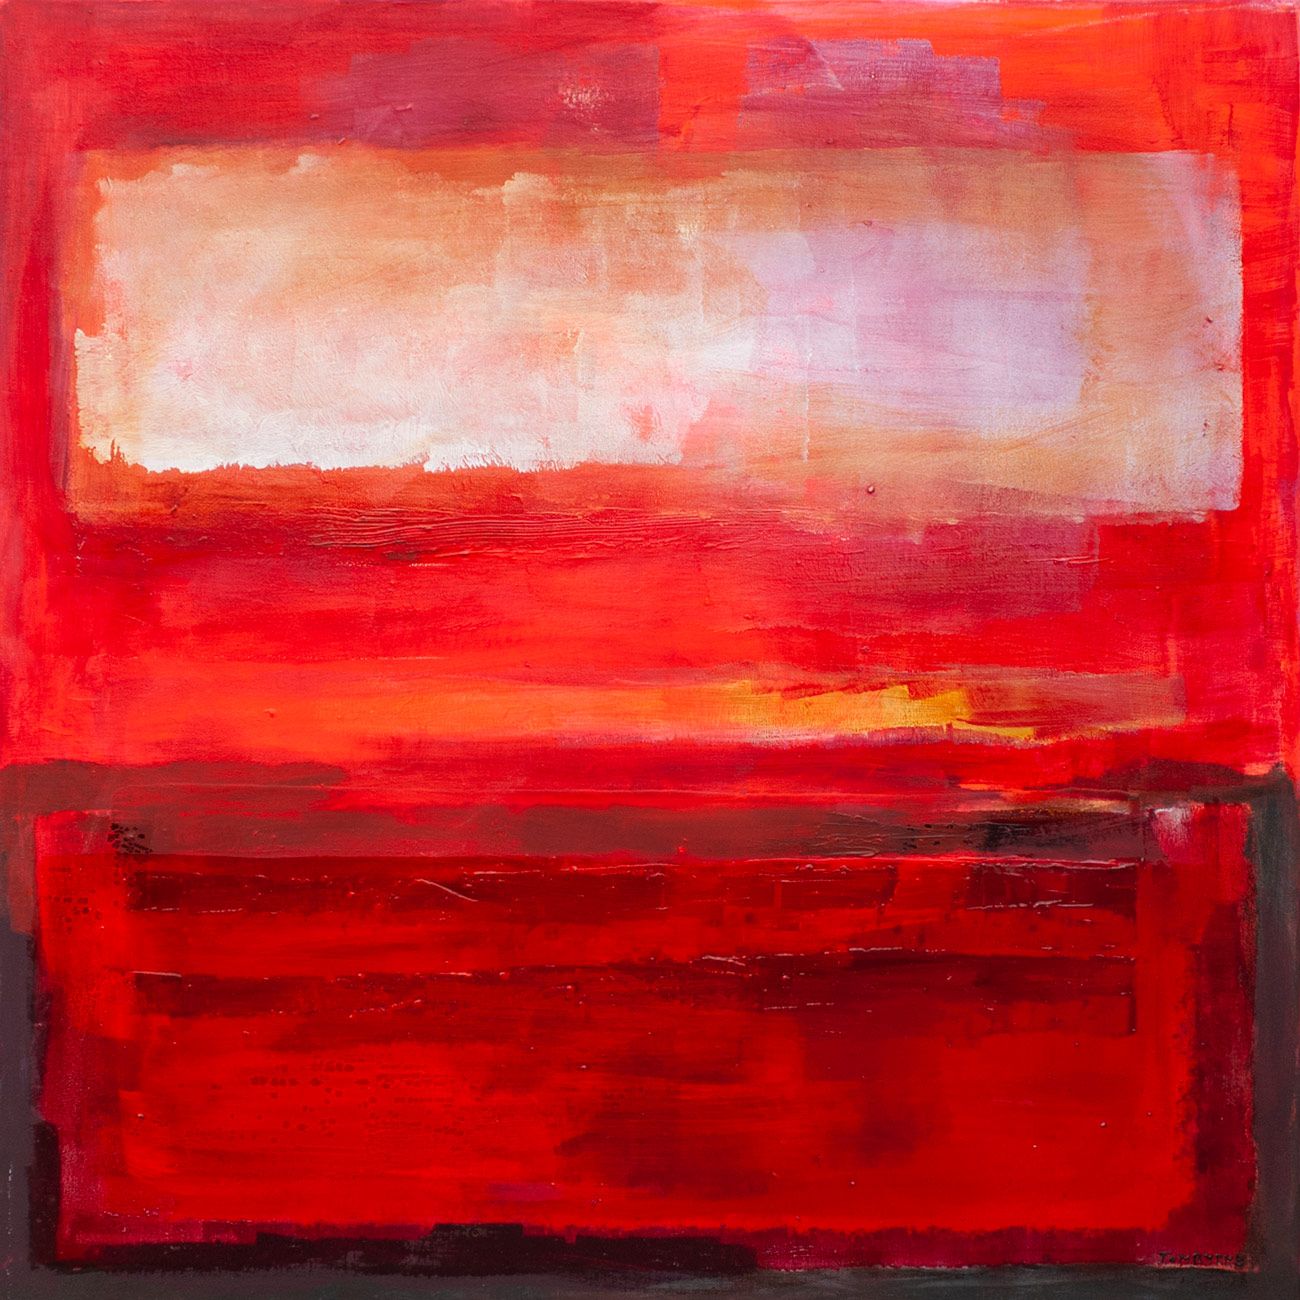 Red Skies by Tom Byrne